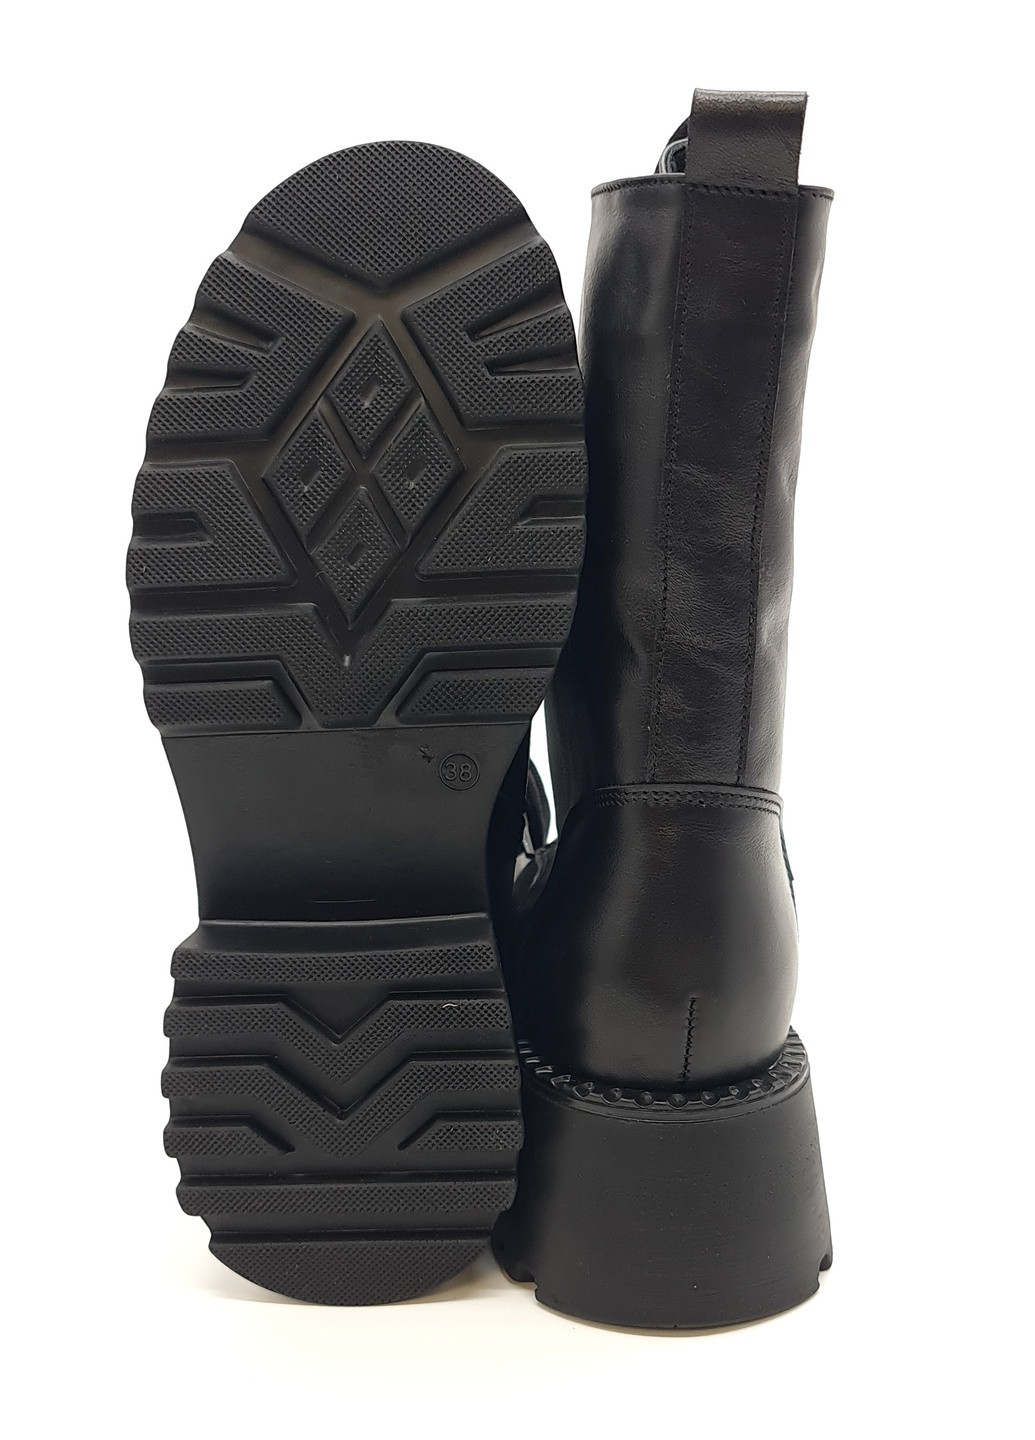 Осенние женские ботинки зимние черные кожаные fs-14-6 23,5 см (р) Foot Step